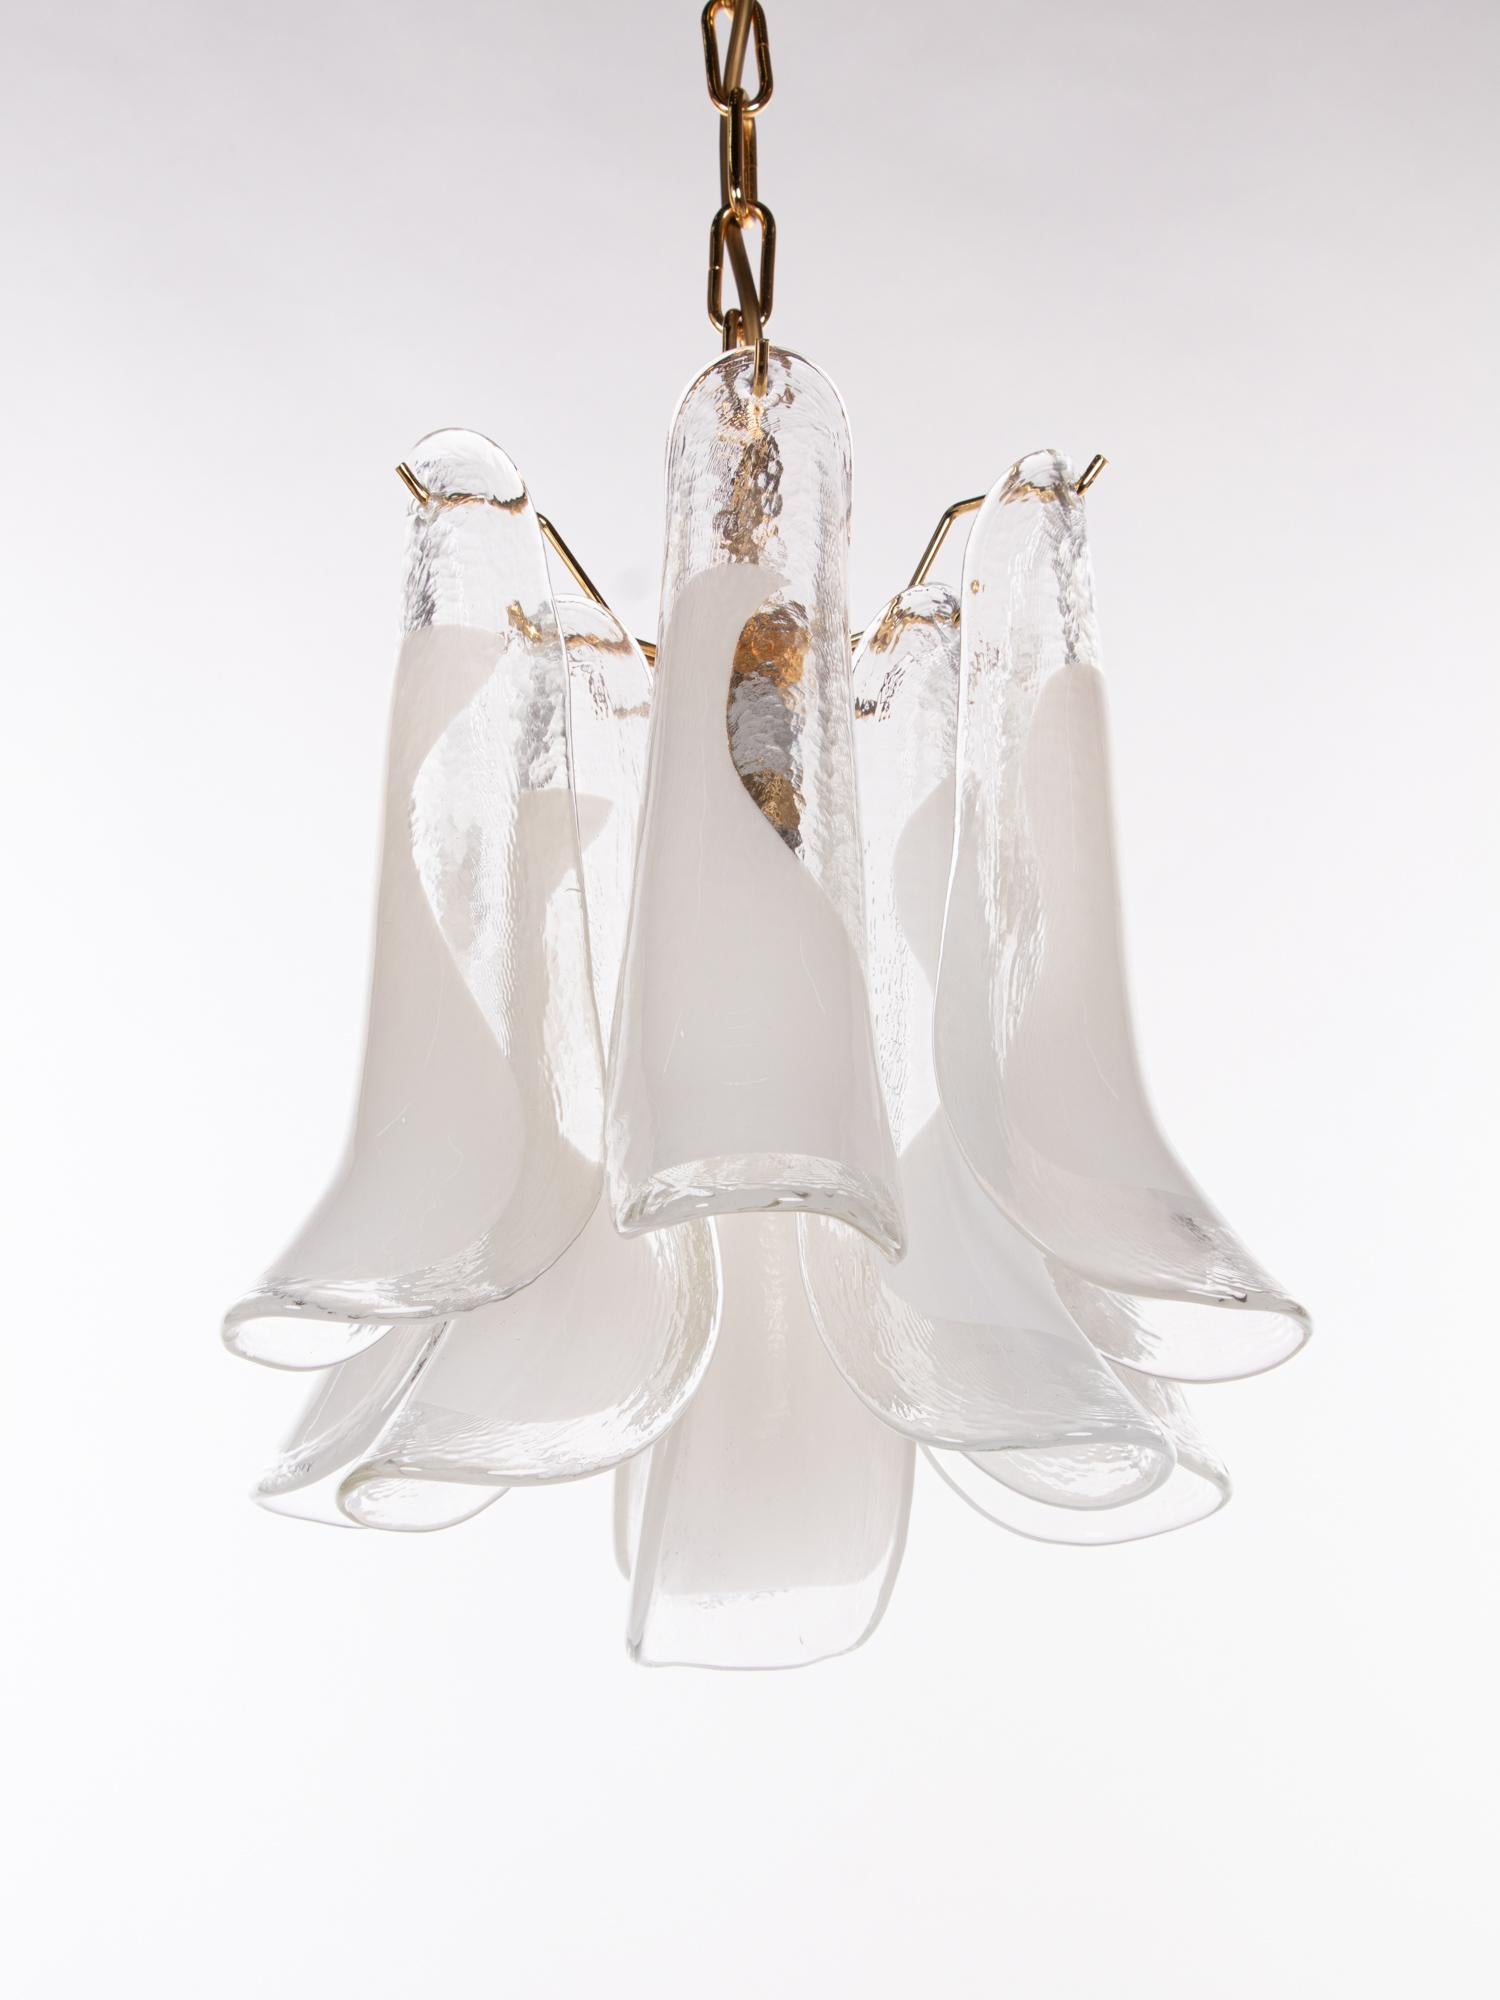 Elégant lustre vintage avec des pétales en verre de Murano soufflé à la main, teinté clair et blanc, sur un cadre plaqué or. Fabriqué en Italie. 

Fabricant : Novaresi. 
Mesures : dm 12.6